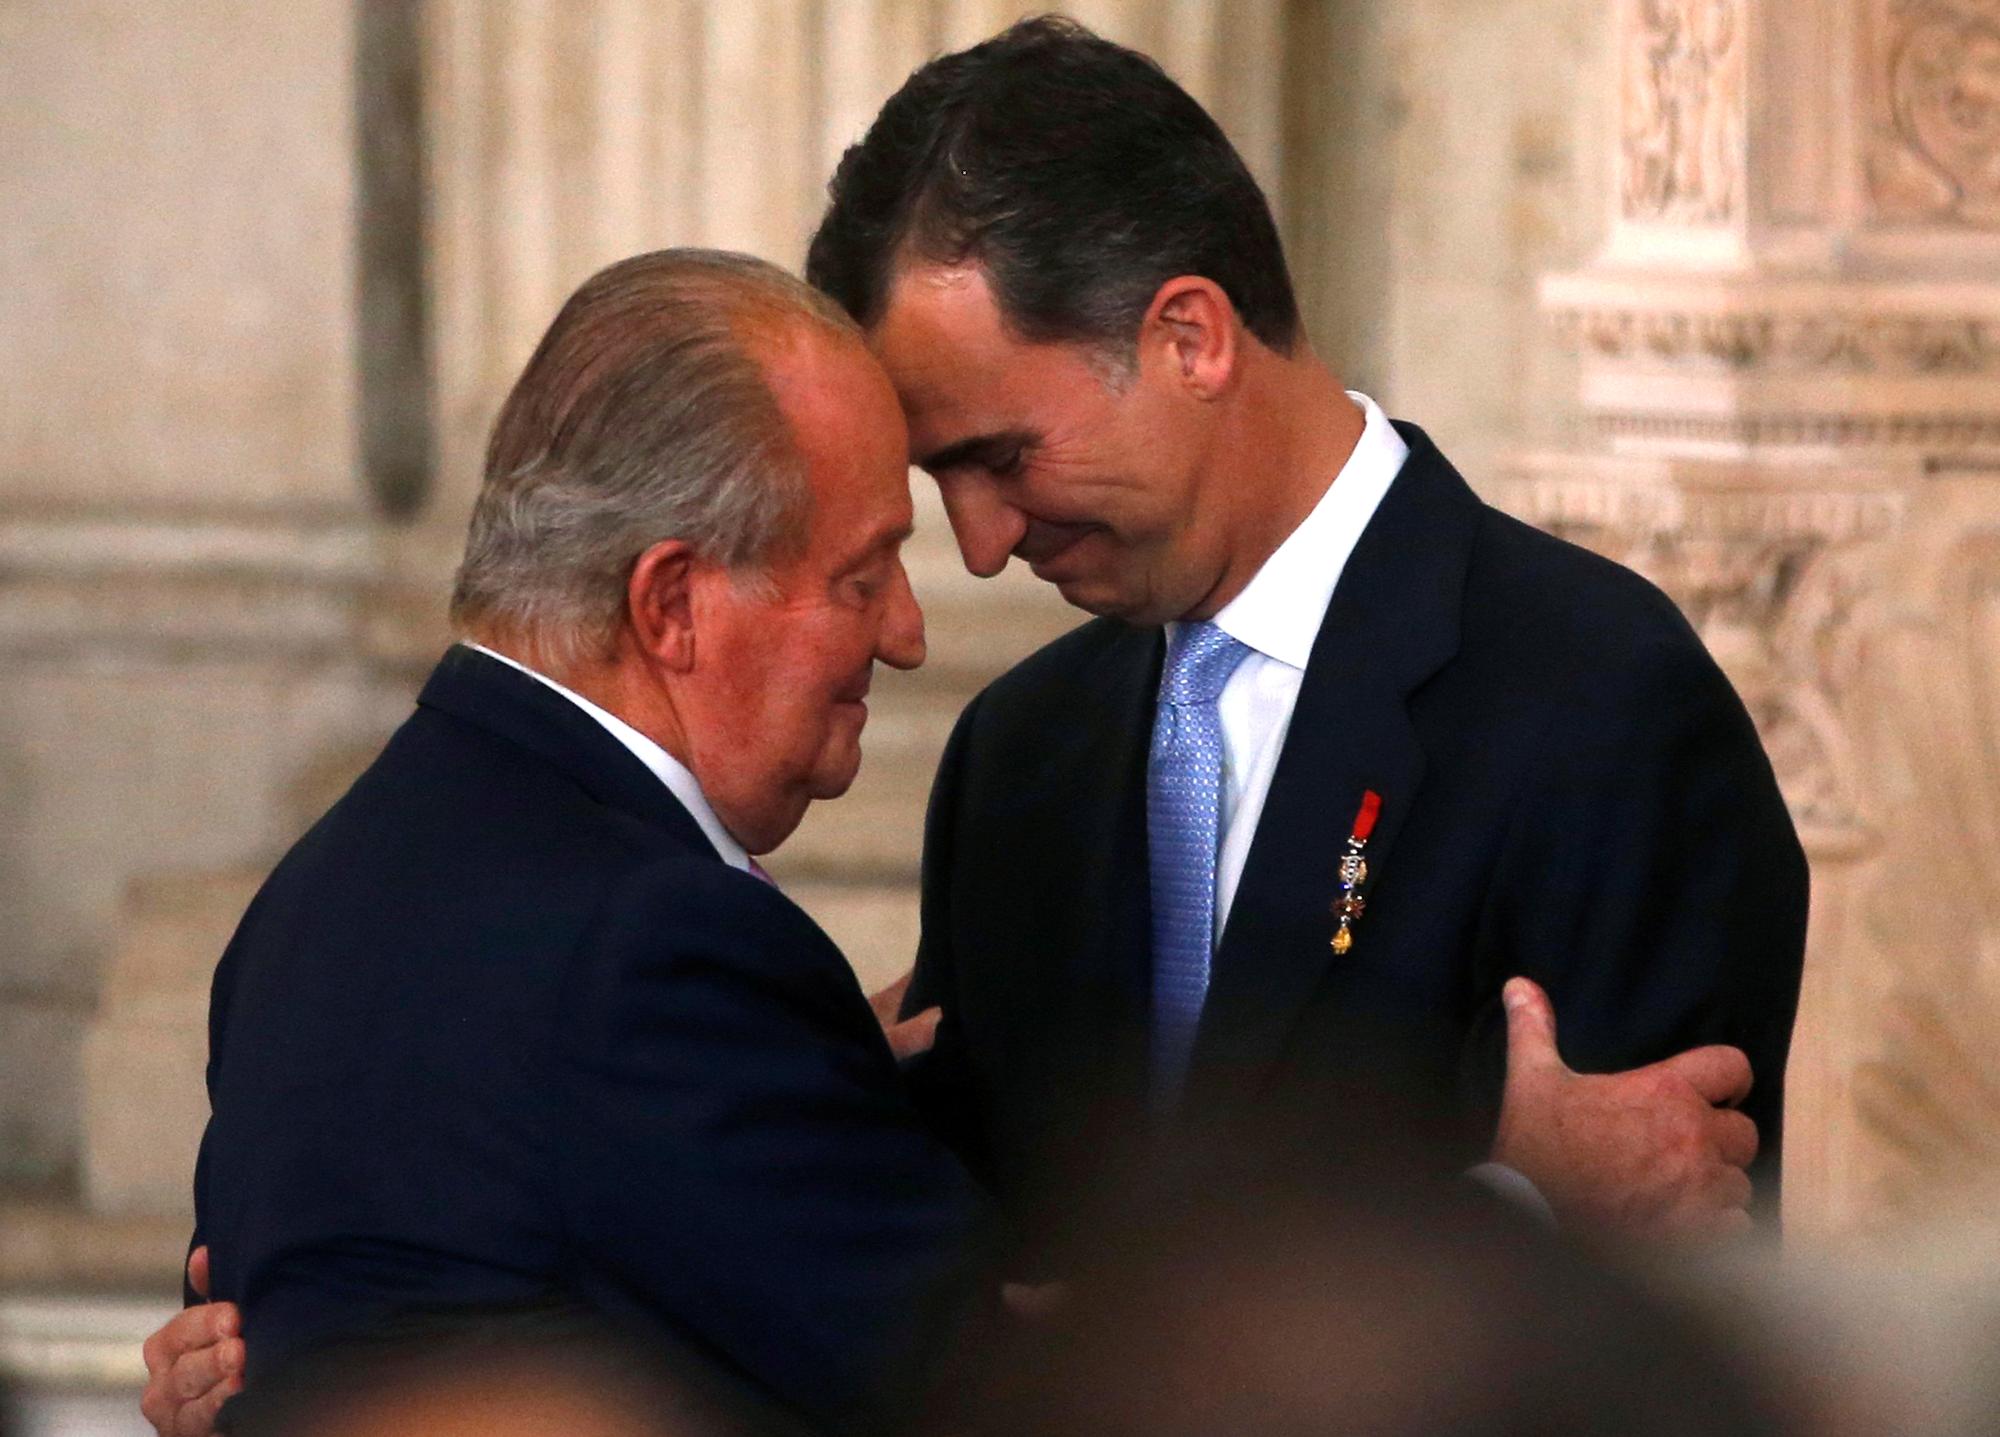 L'accolade du roi d'Espagne Juan Carlos et du prince Felipe avant la cérémonie de l'acte d'abdication, au Palais royal de Madrid, le 18 juin 2014. [REUTERS - Juan Medina]